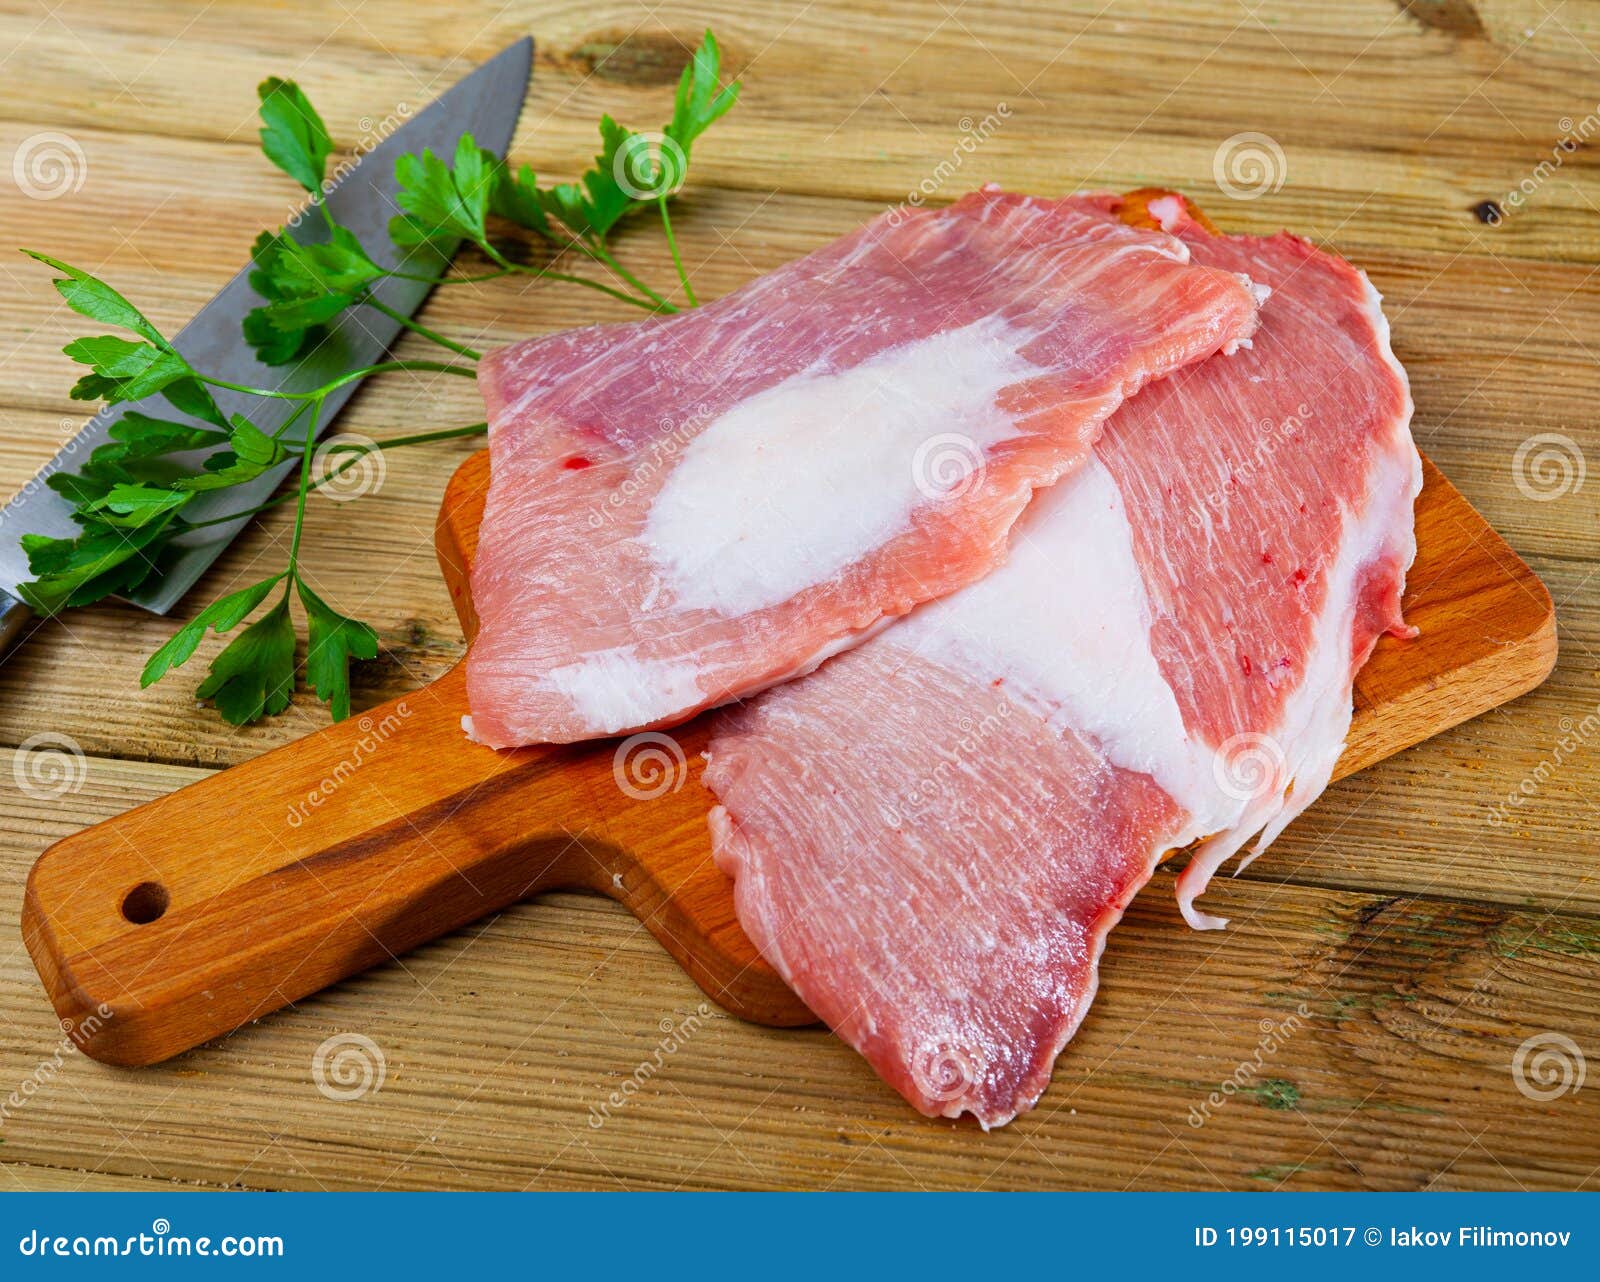 raw pork meat secreto